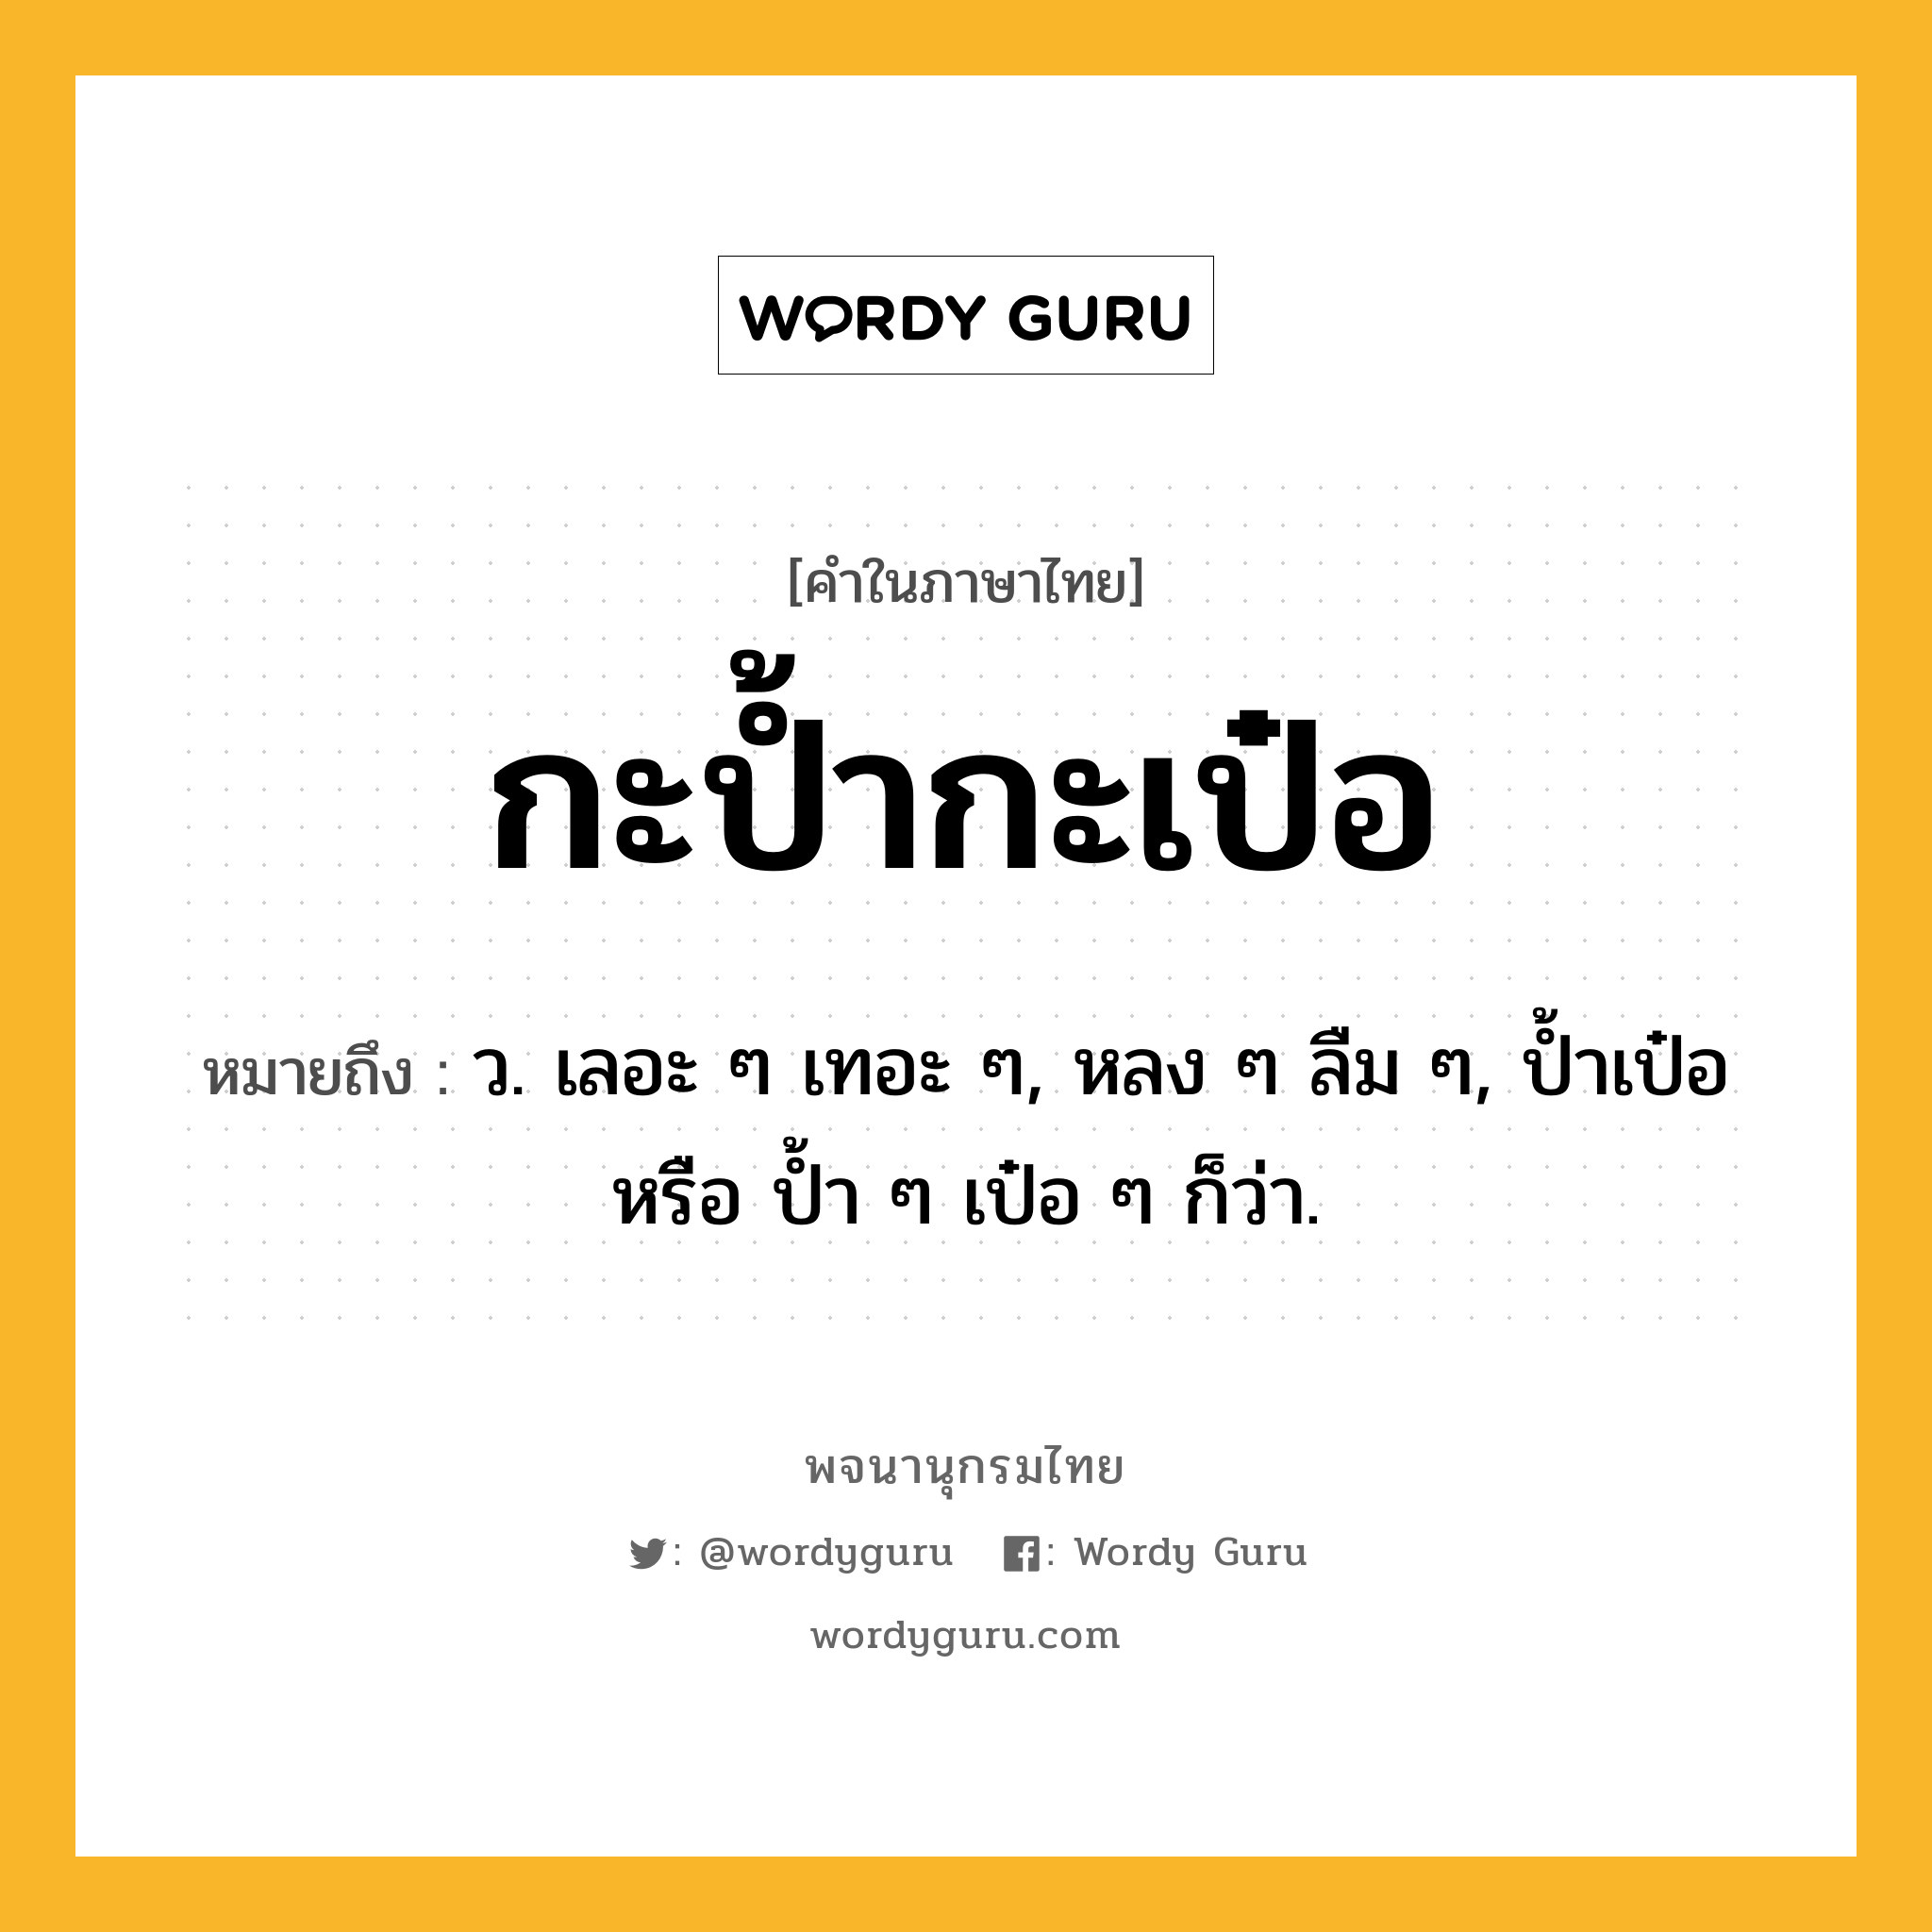 กะป้ำกะเป๋อ หมายถึงอะไร?, คำในภาษาไทย กะป้ำกะเป๋อ หมายถึง ว. เลอะ ๆ เทอะ ๆ, หลง ๆ ลืม ๆ, ป้ำเป๋อ หรือ ป้ำ ๆ เป๋อ ๆ ก็ว่า.